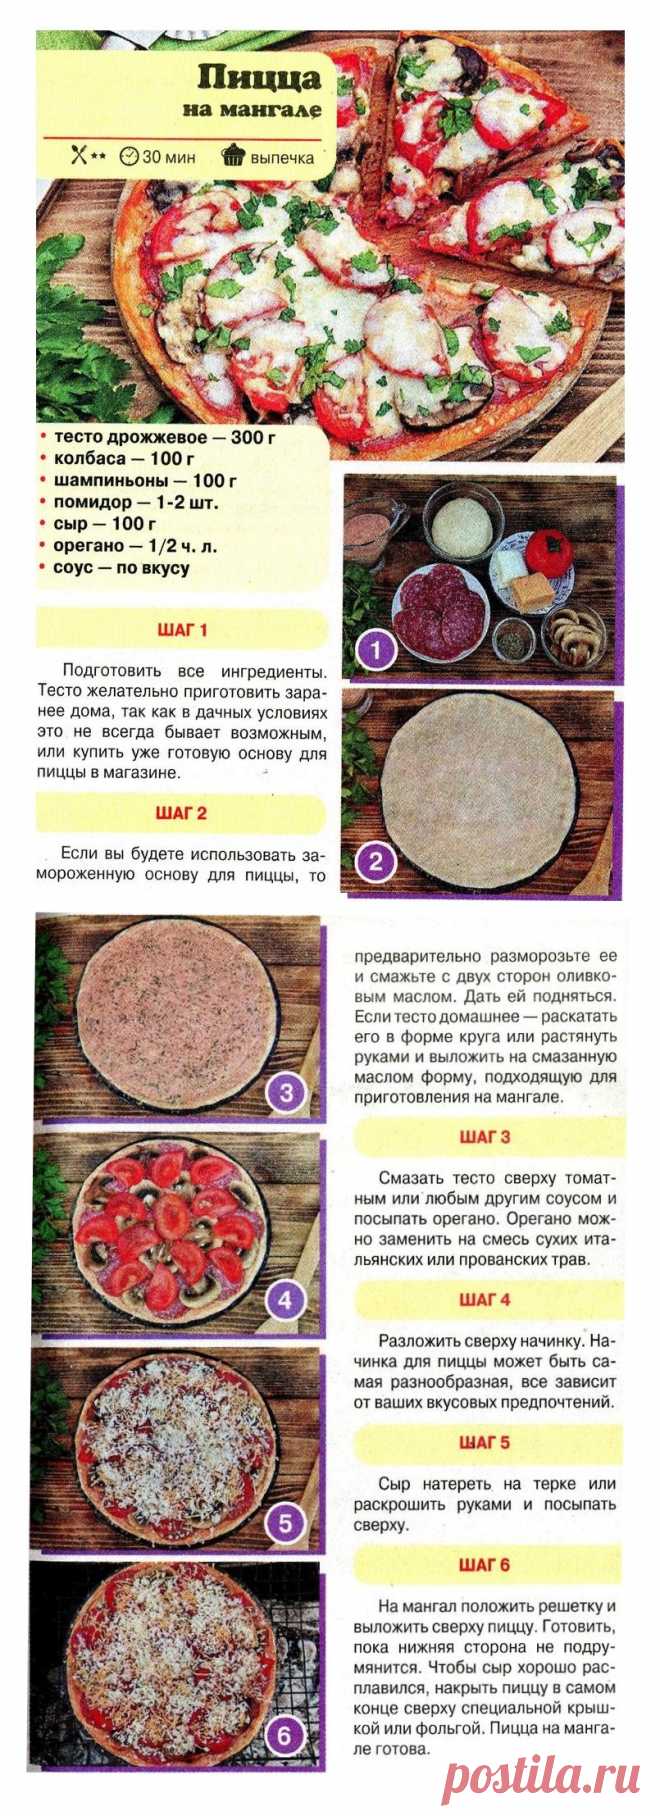 юлия высоцкая рецепт пиццы тесто фото 114